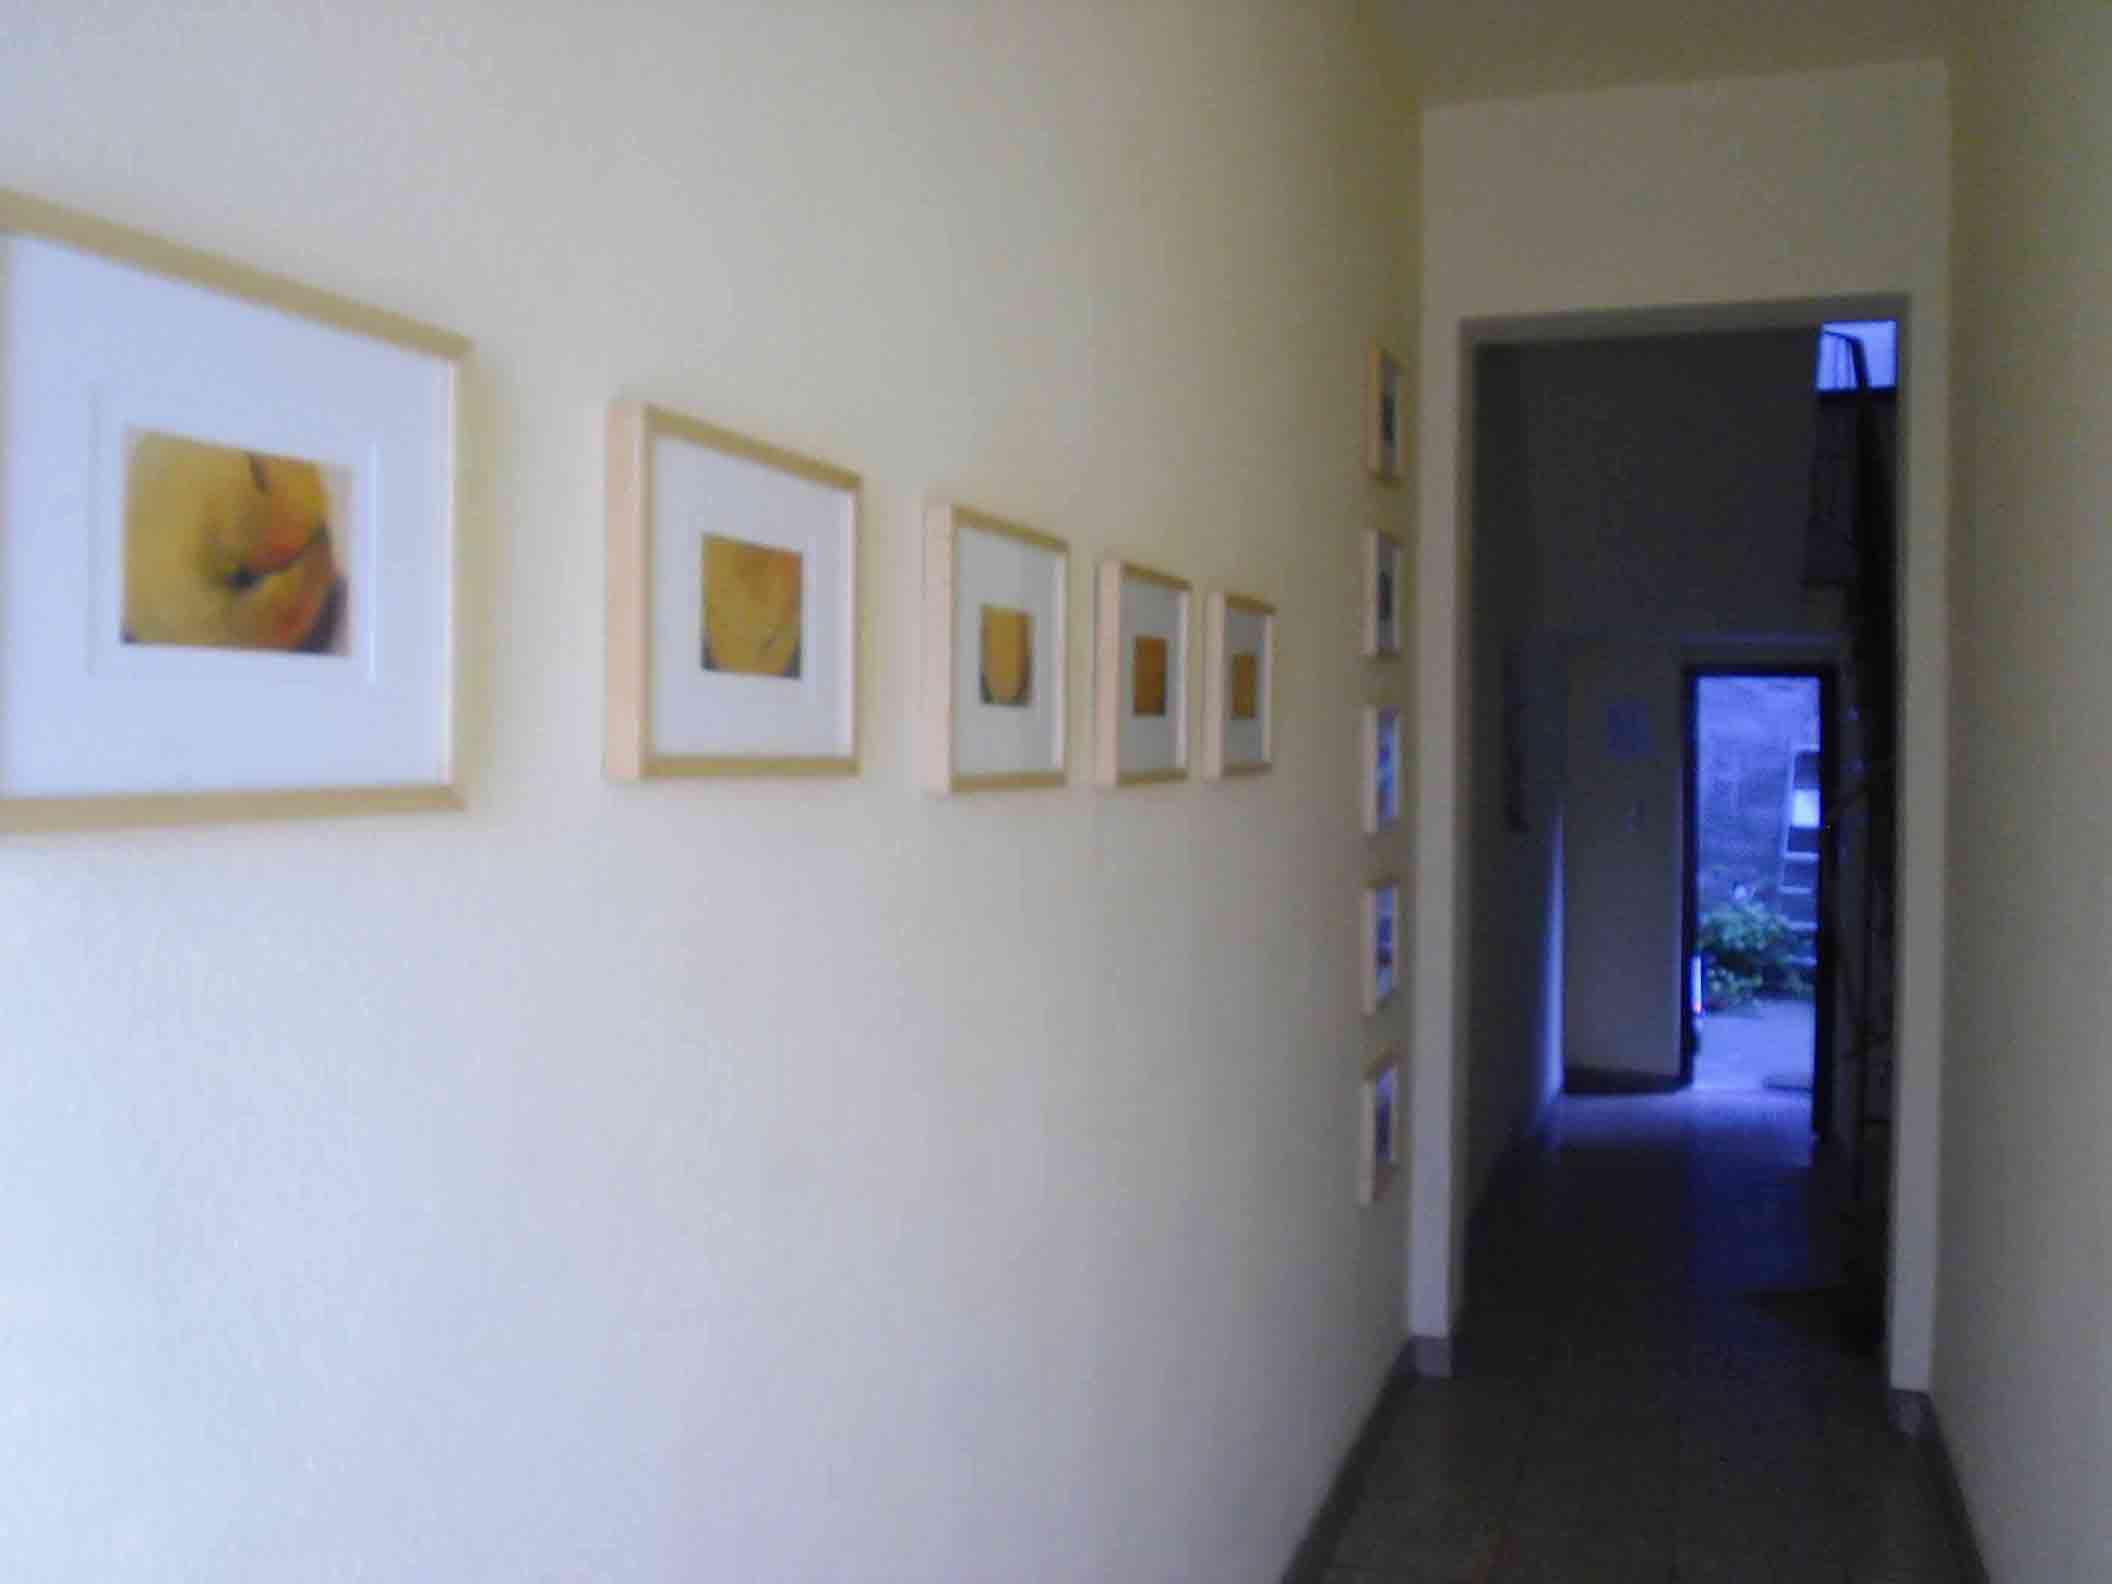 Ein paar von Peters Pastellen; eine waagerechte Reihe von 5 orangenen Pastellen, dahinter eine senkrechte Reihe von 5 roten Pastellen an der Wand zum Eingangsflur des Hauses